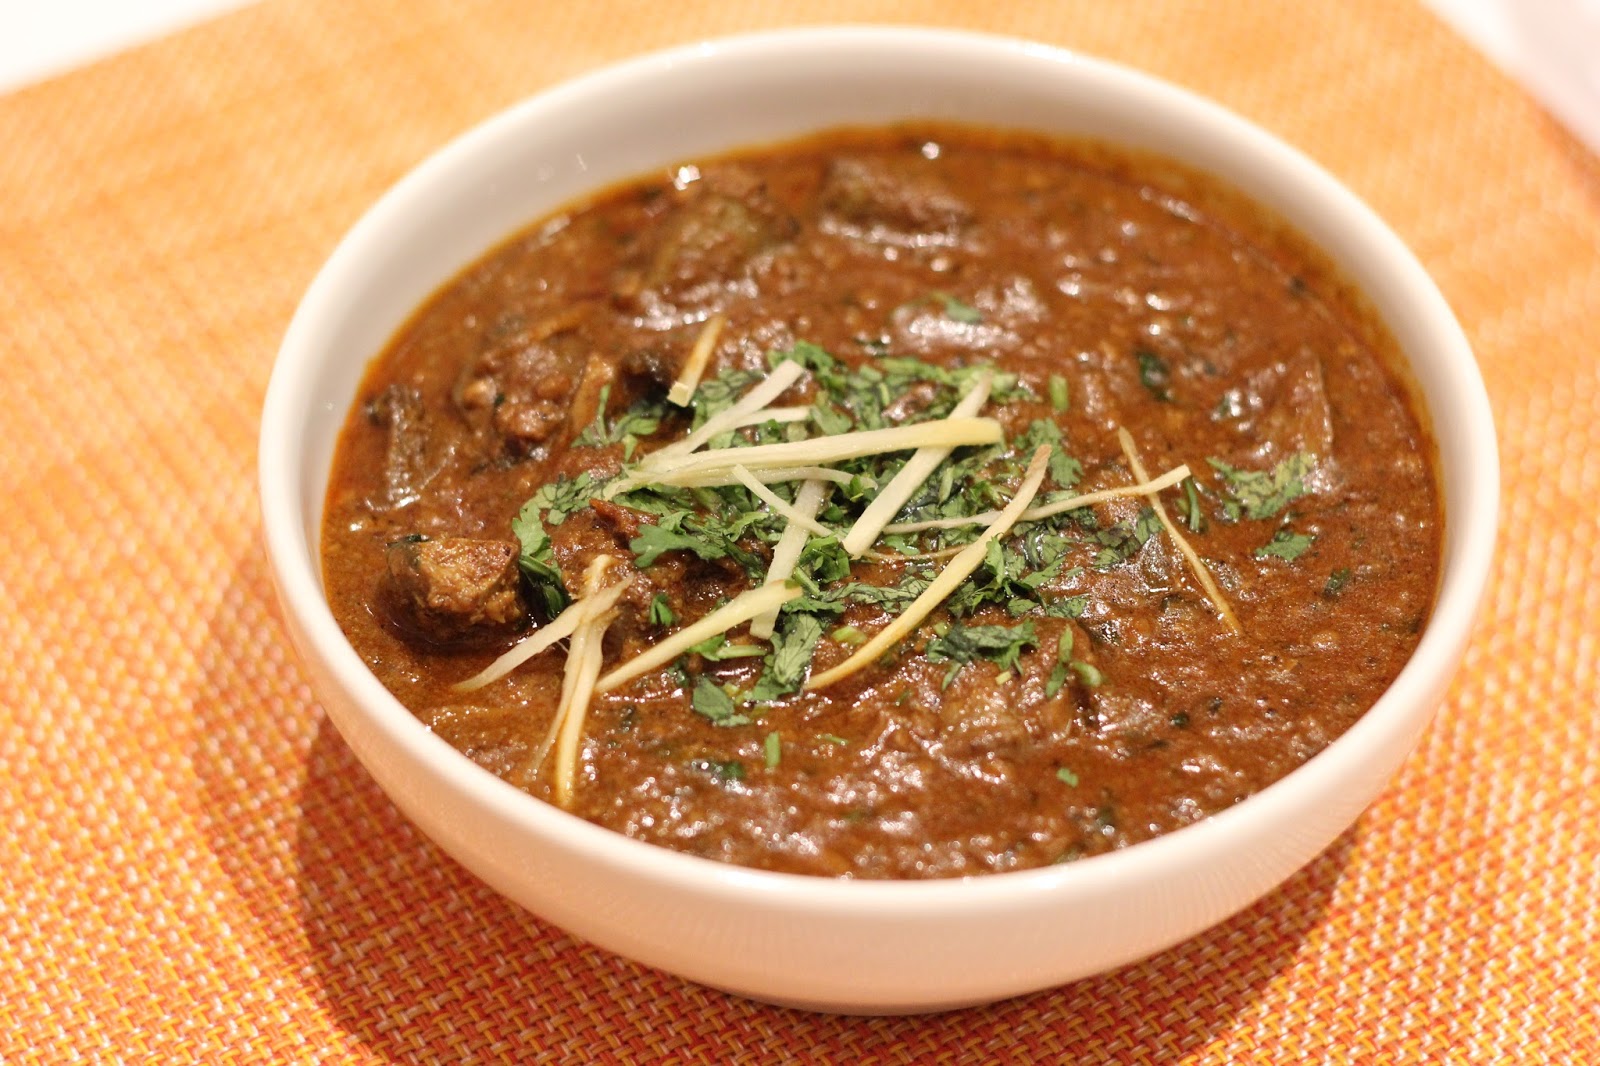 Food Review : Purani Dilli Food Festival at My Fortune, Bengaluru